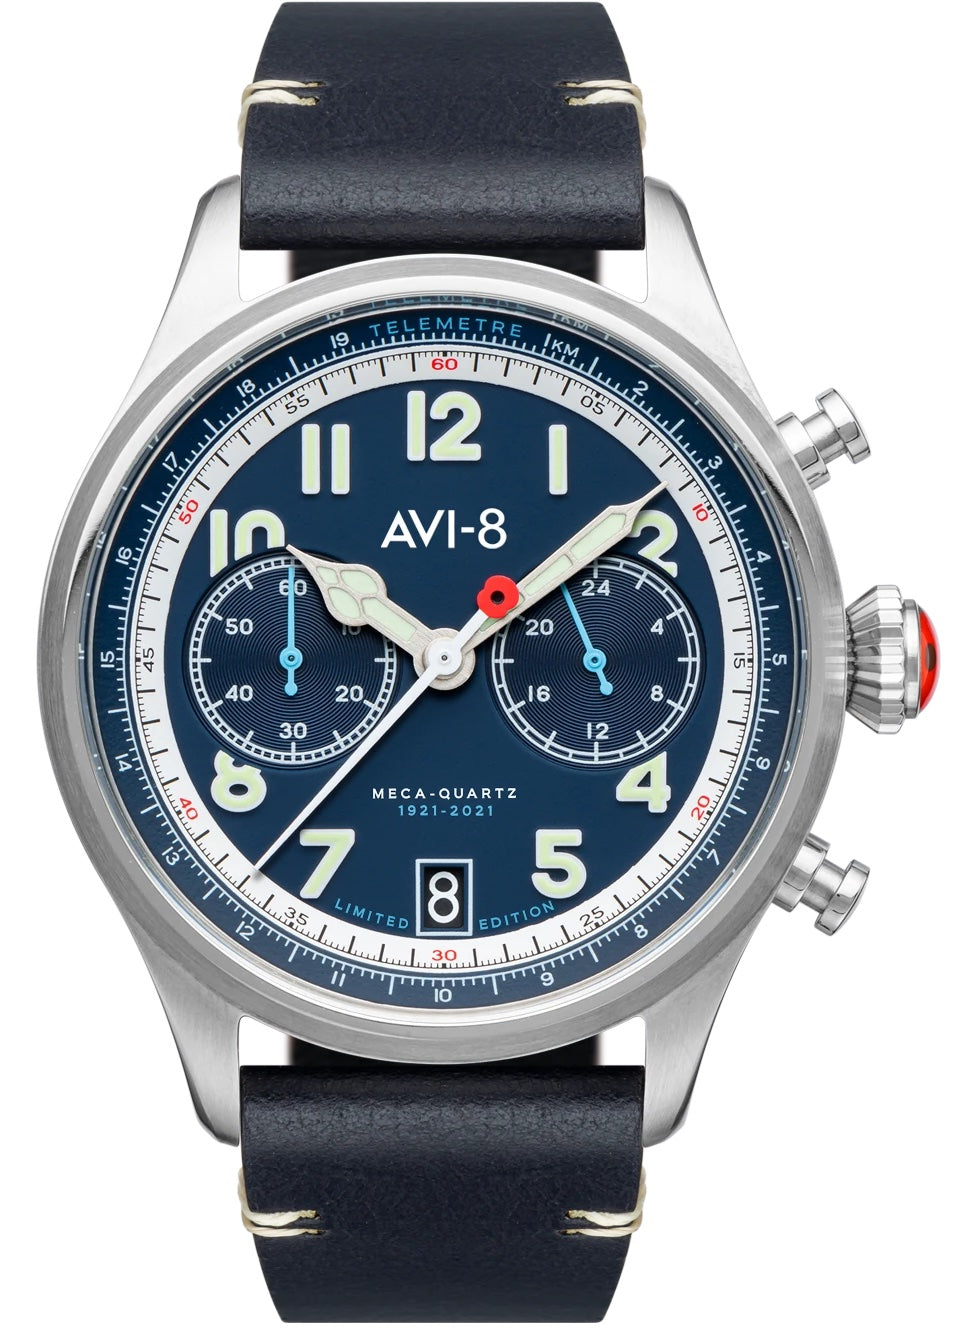 Avi-8 Watch Royal Blue Royal British Legion Limited Edition